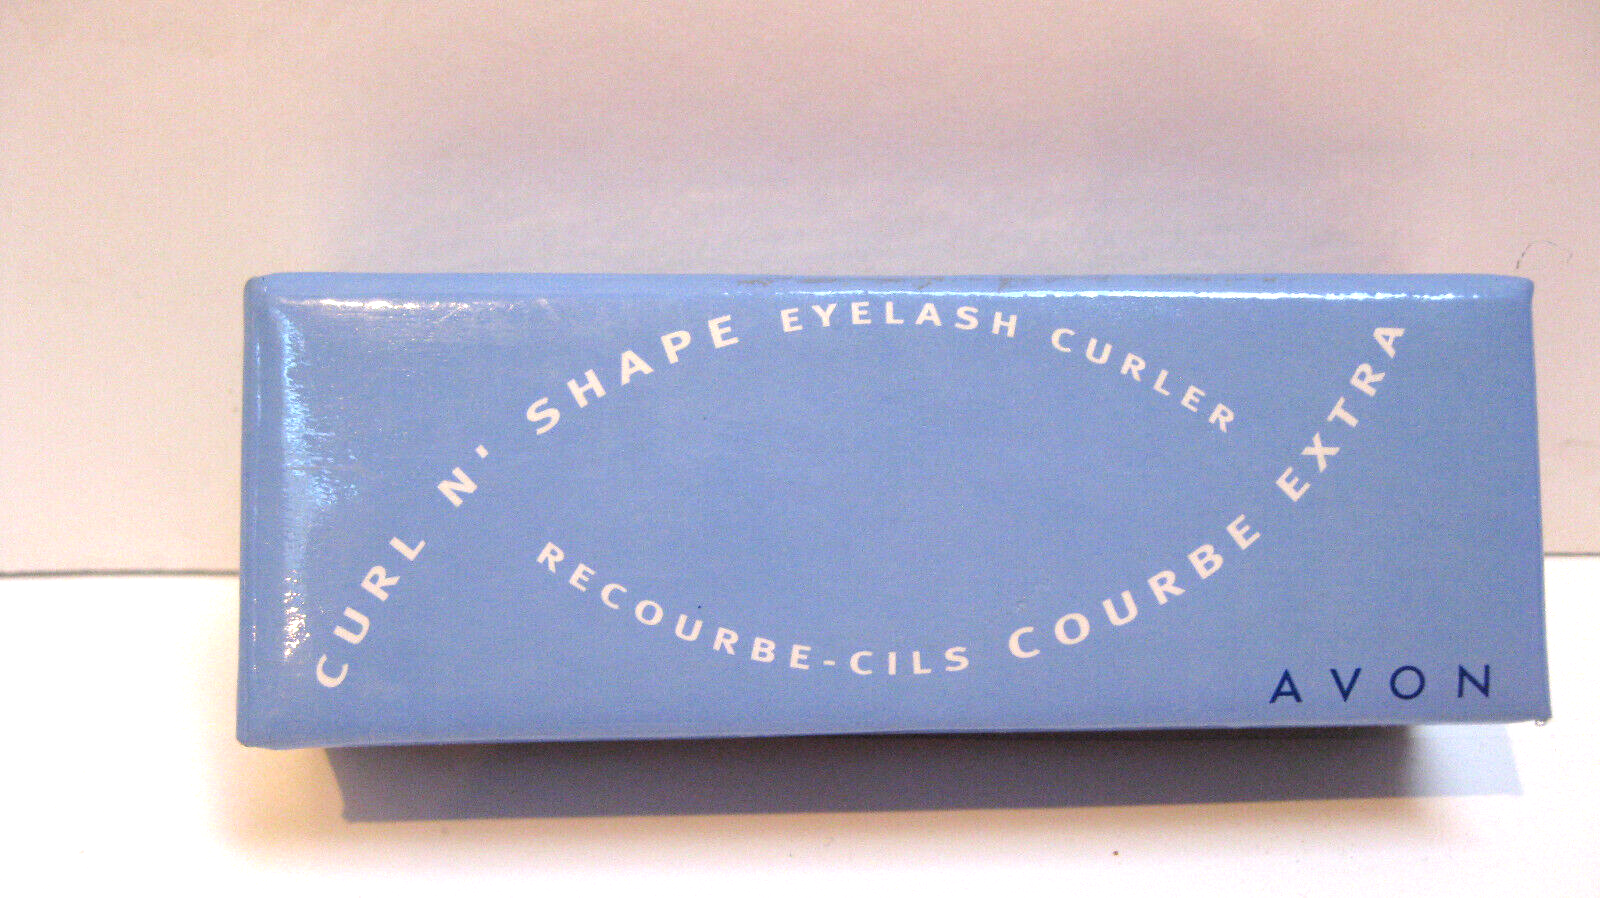 Avon Curl N' Shape Eyelash Curler 2003 New in Package - $8.98